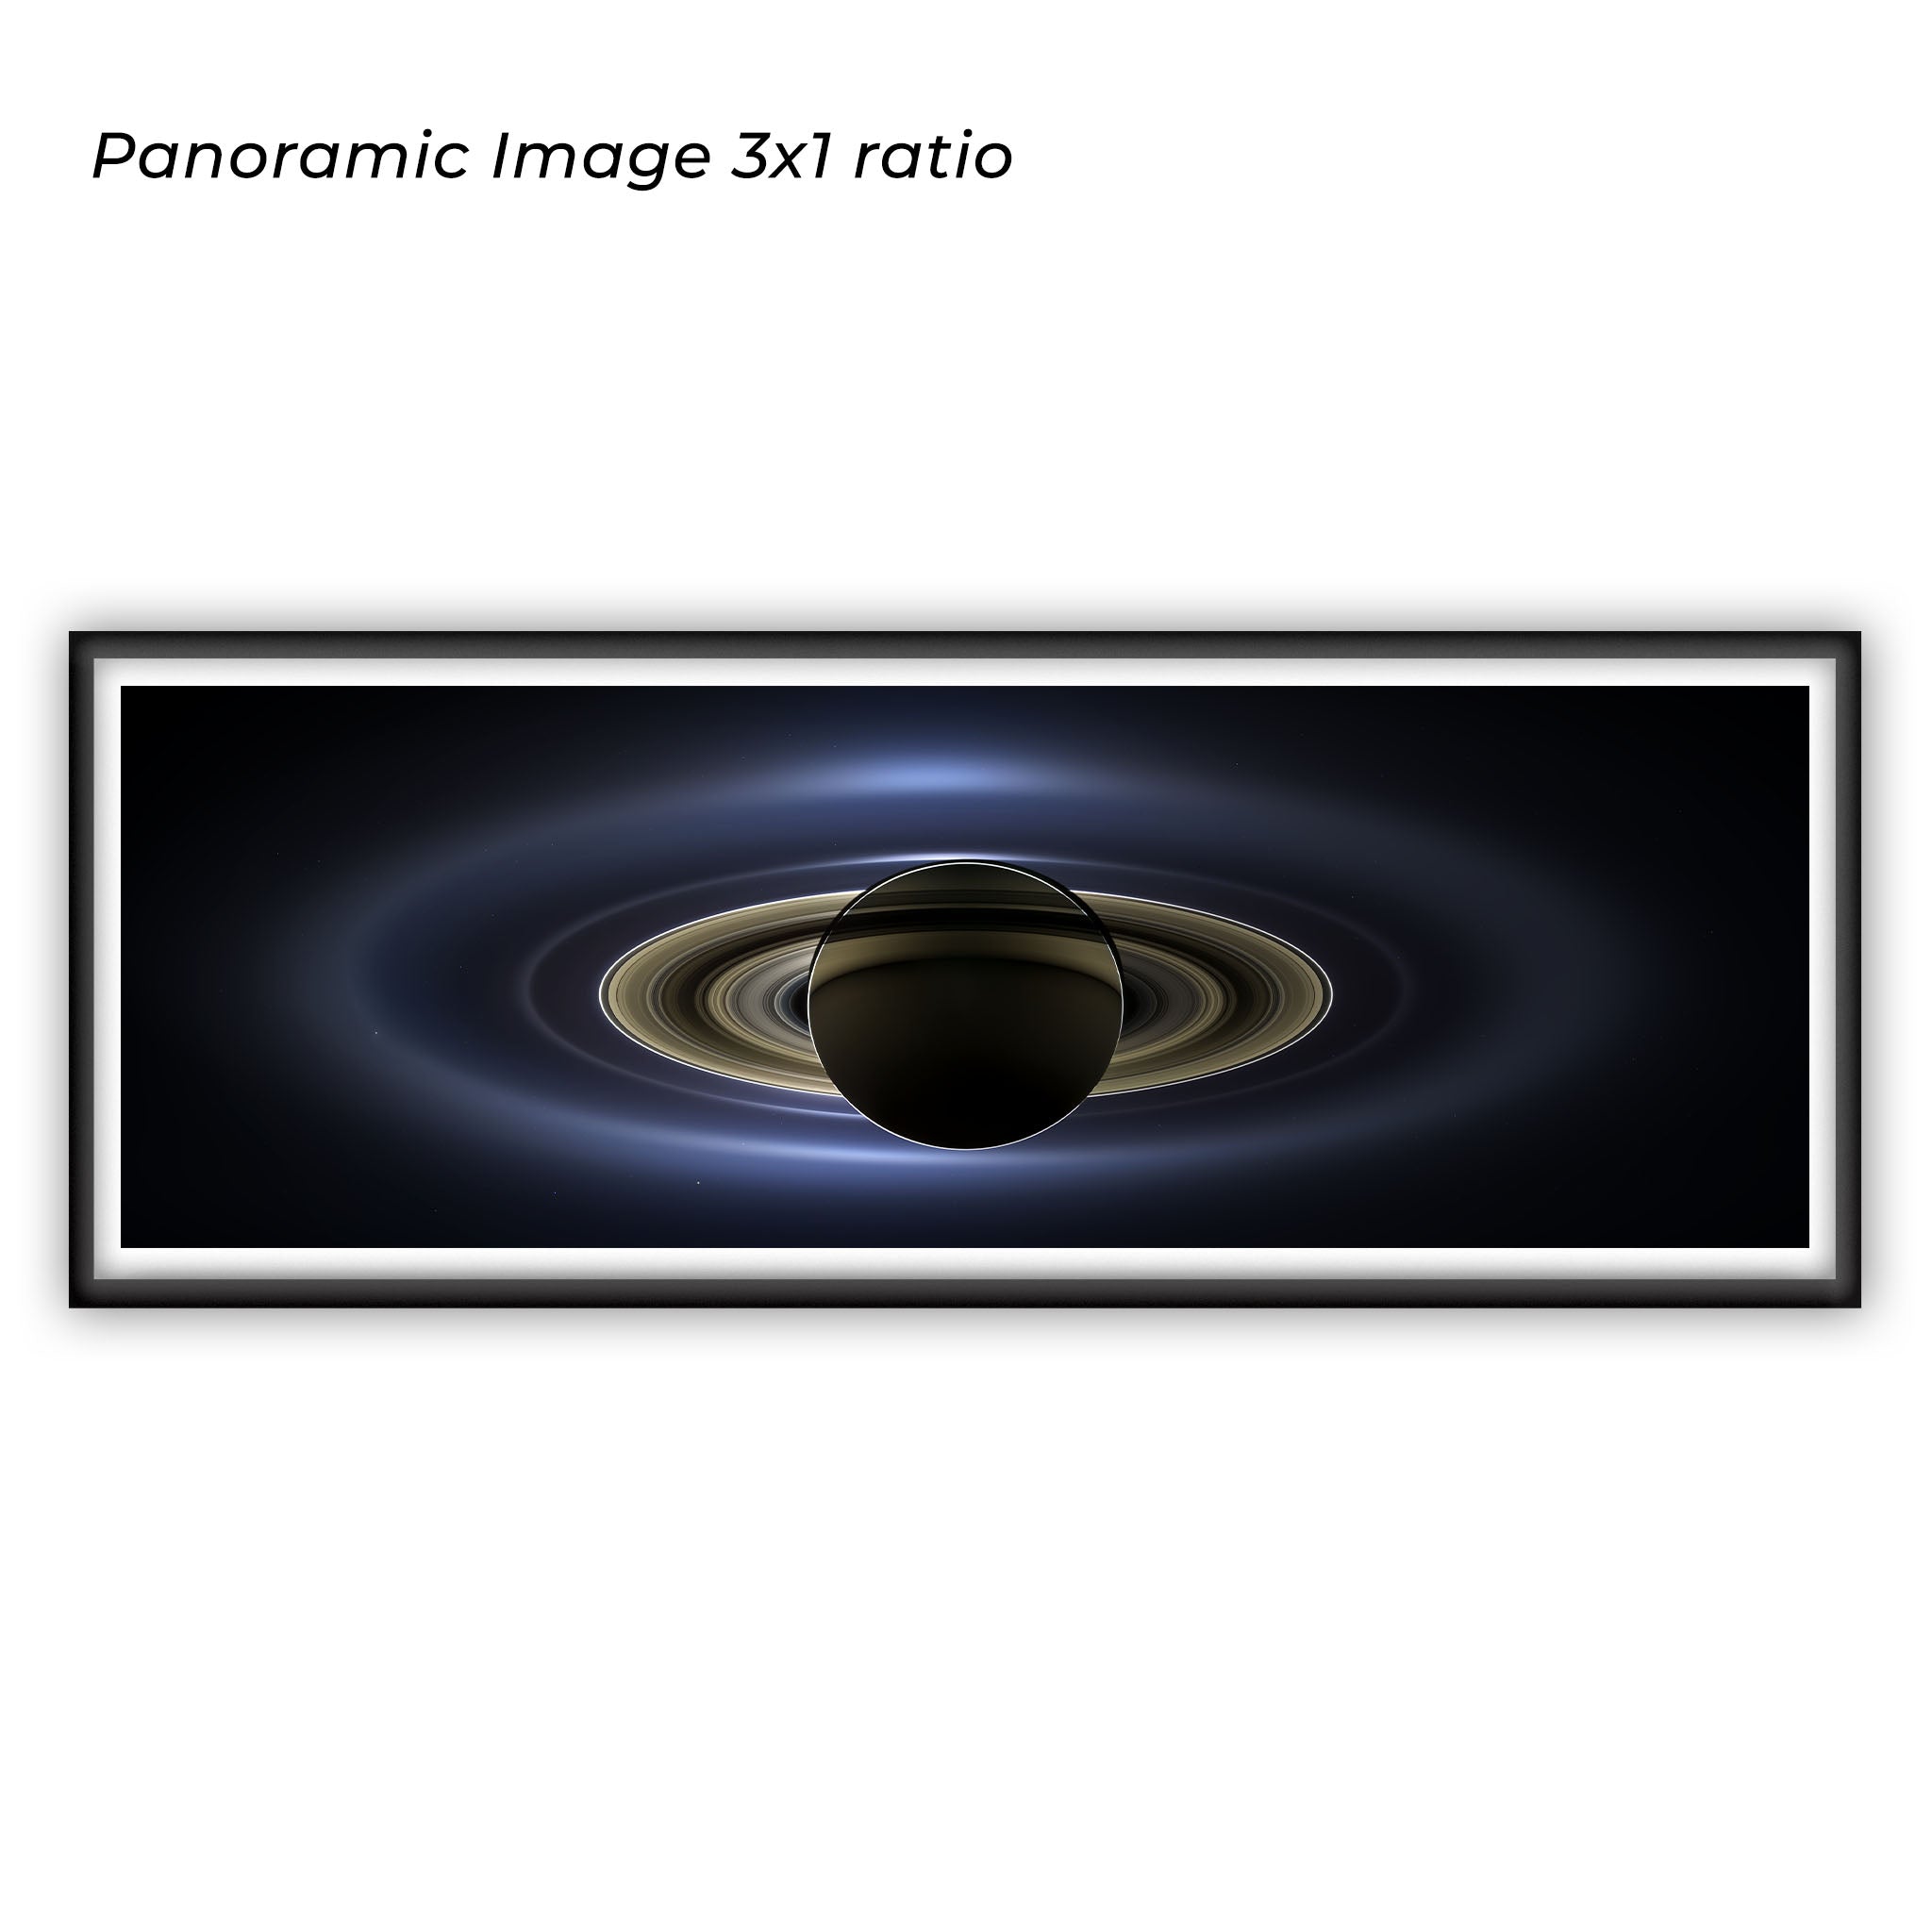 Saturn i zaćmienie